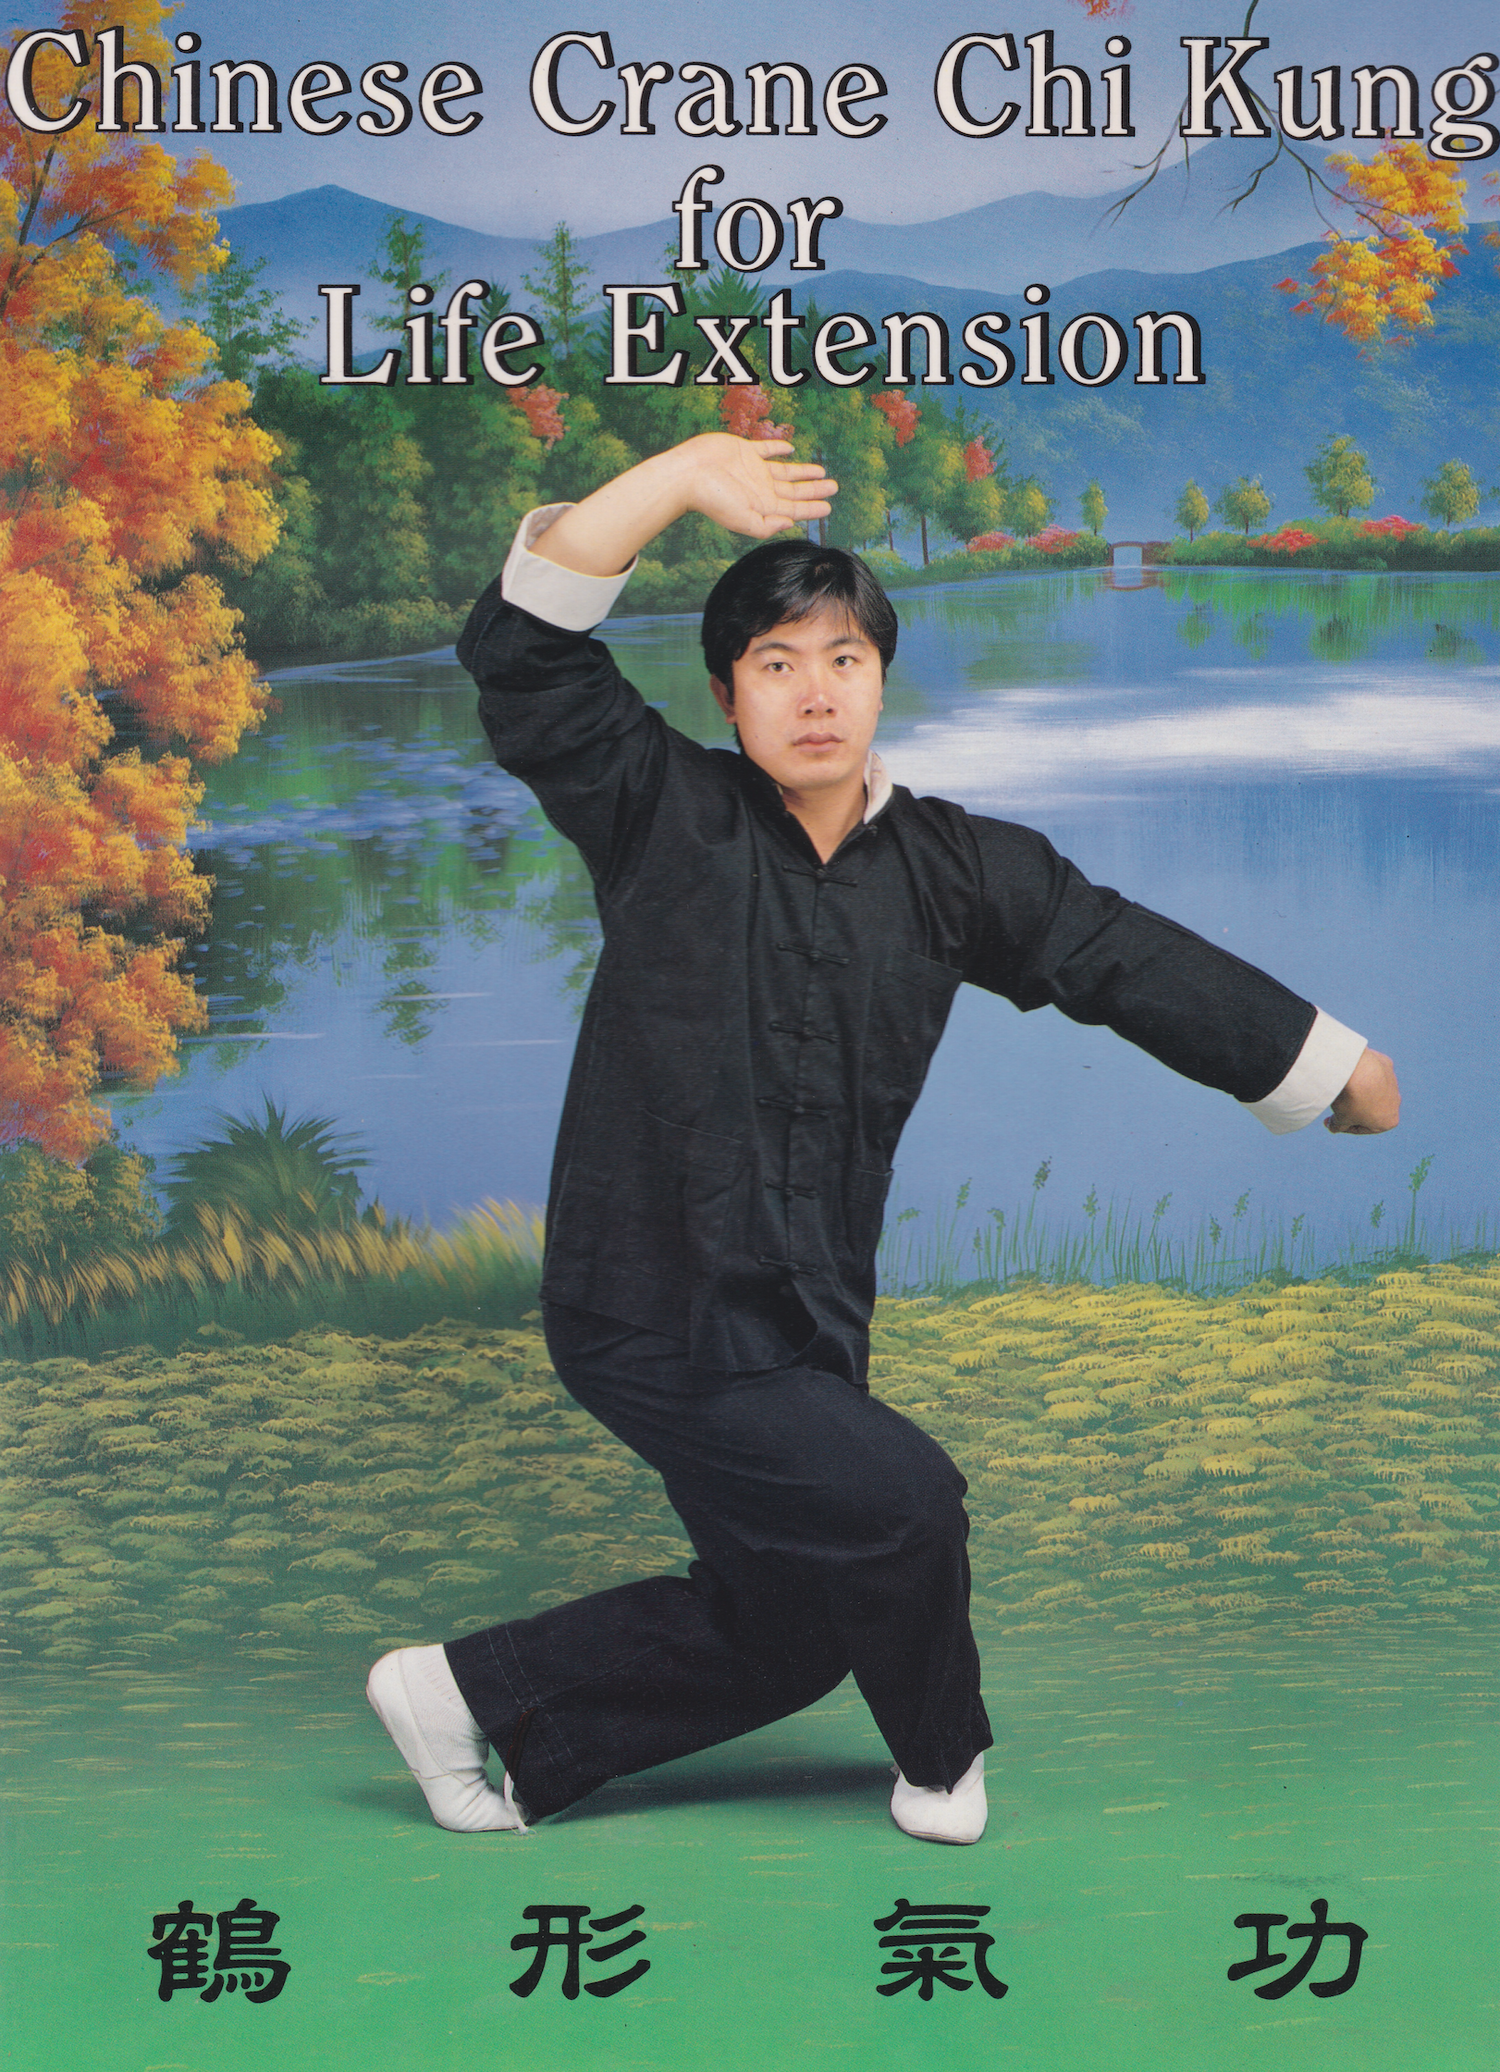 Libro de extensión de Chi Kung de la Grulla China para la Vida